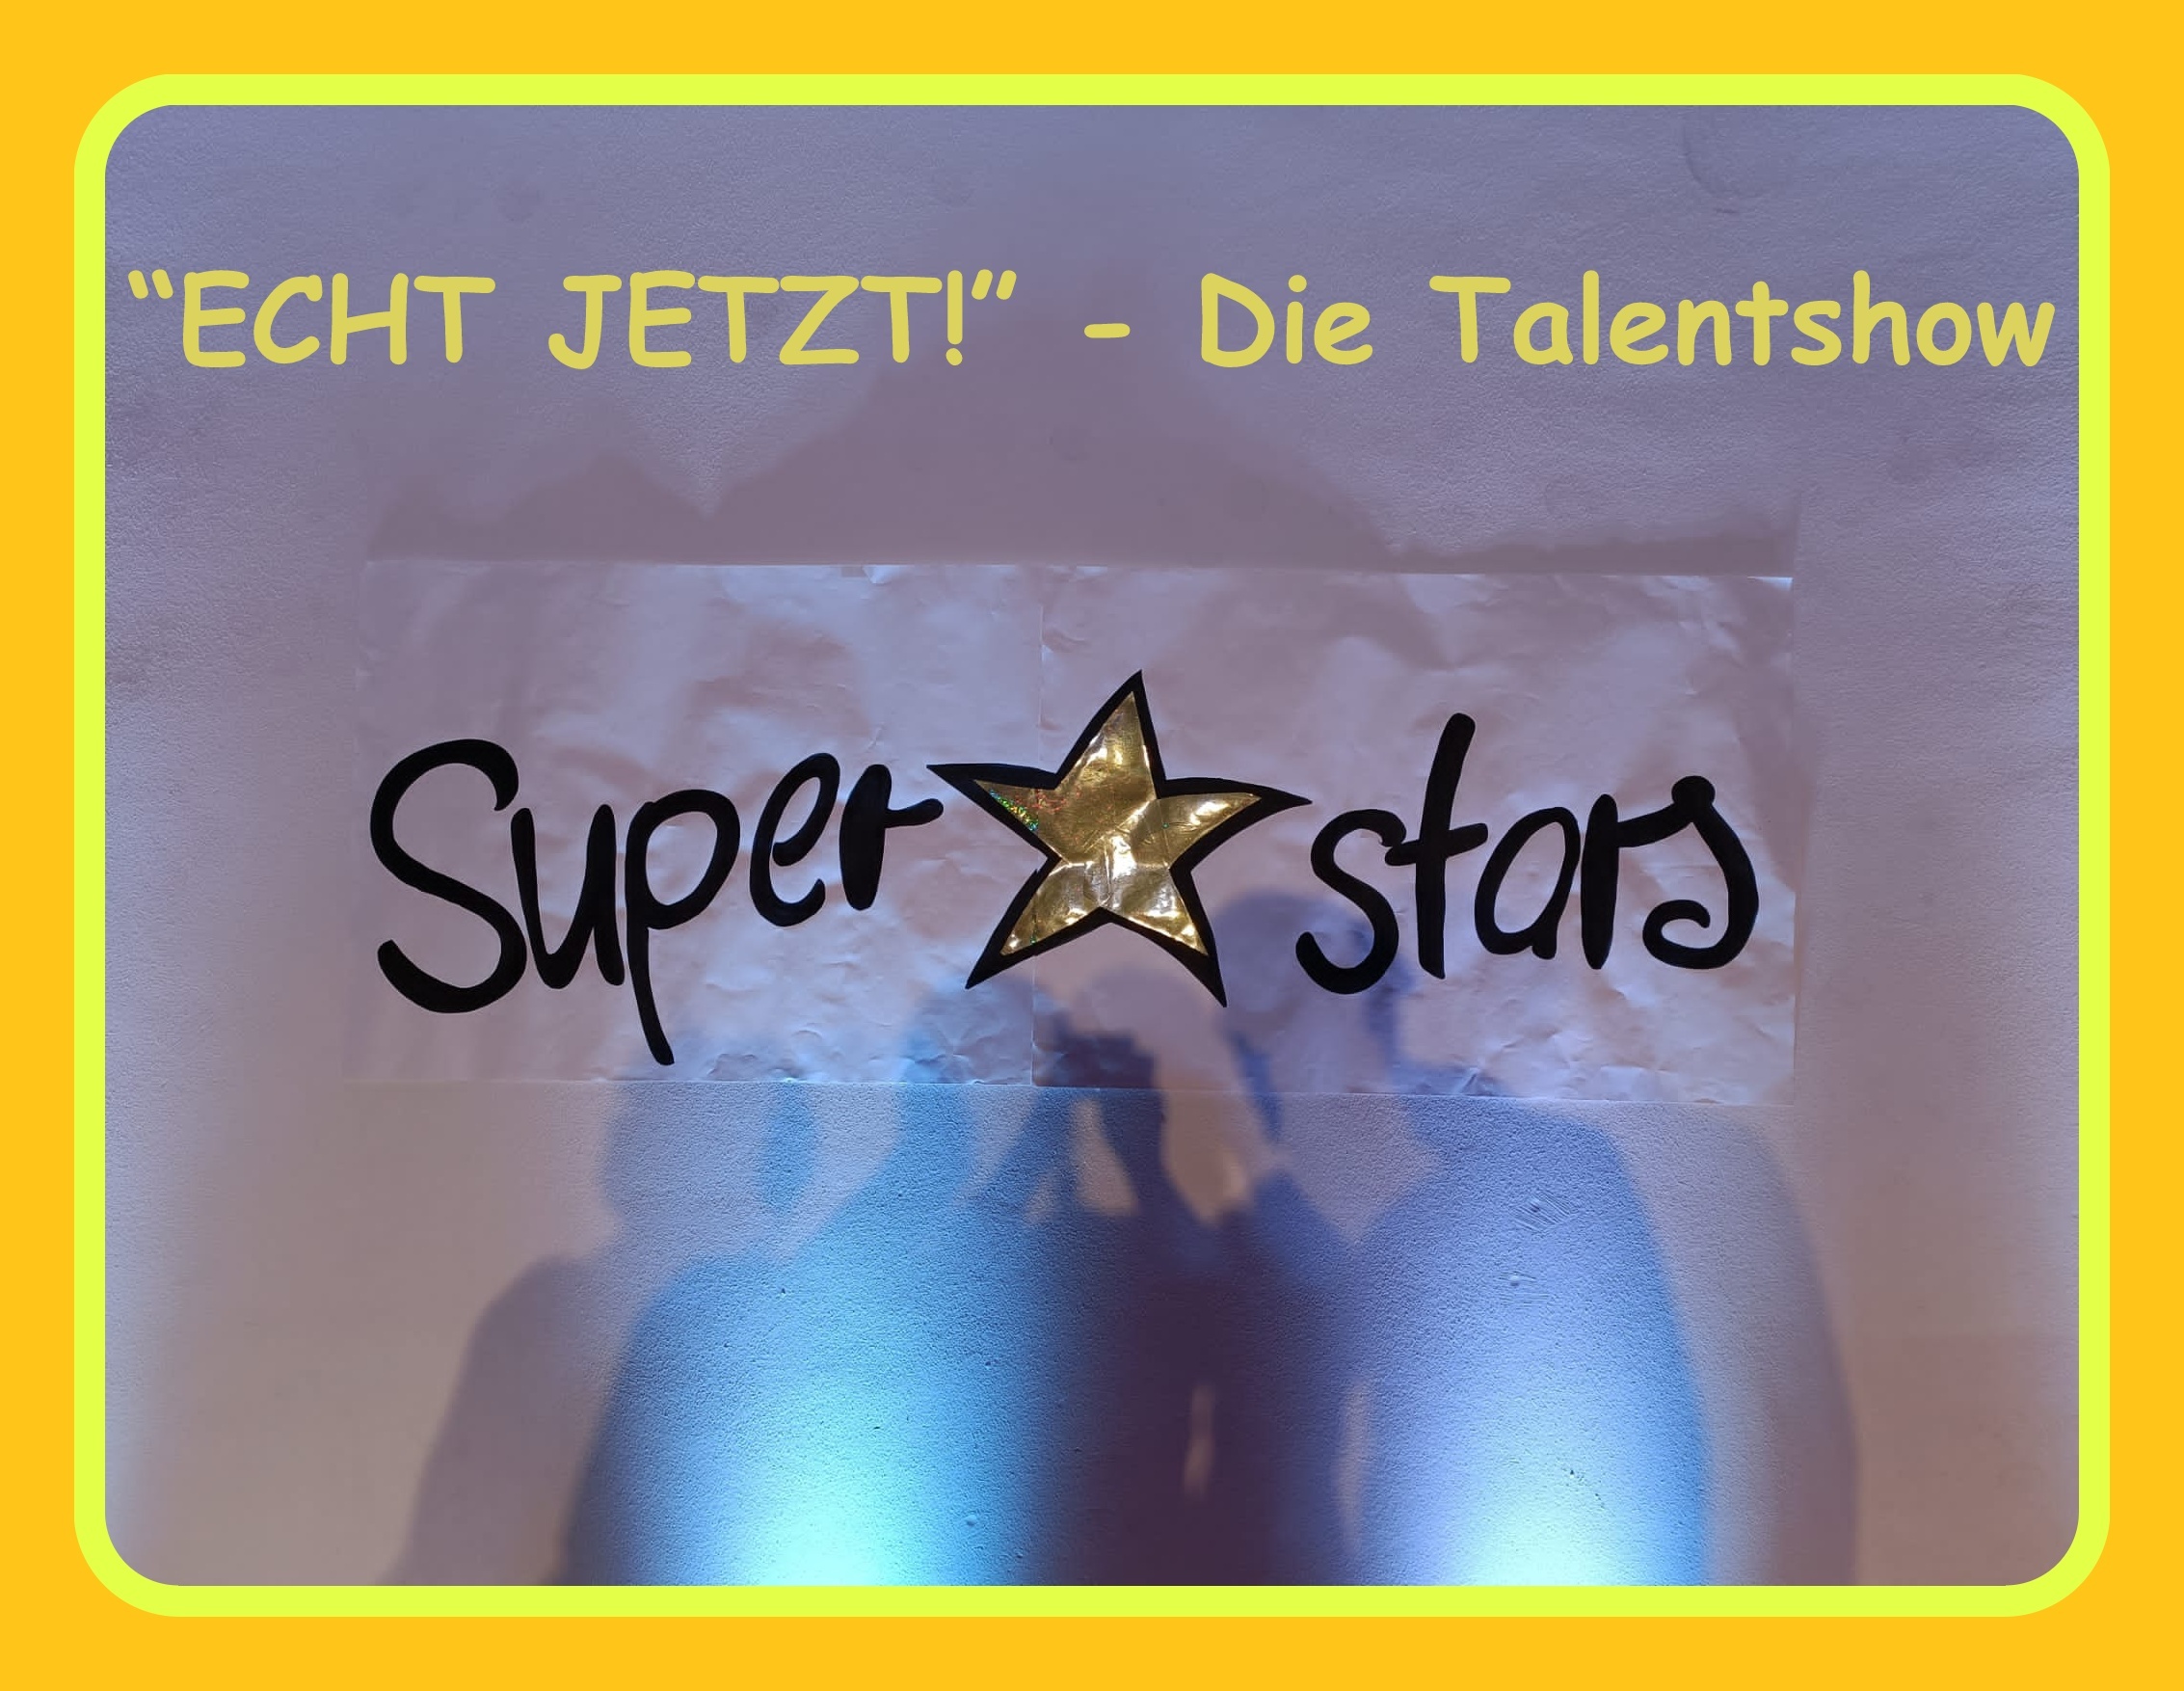 ECHT JETZT! - Die Theaterwerkstatt der Lebenshilfe Minden feierte Premiere! Birgit Klinksieck und Maja Pape erarbeiteten mit den Spielern eine skurrile Talentshow.